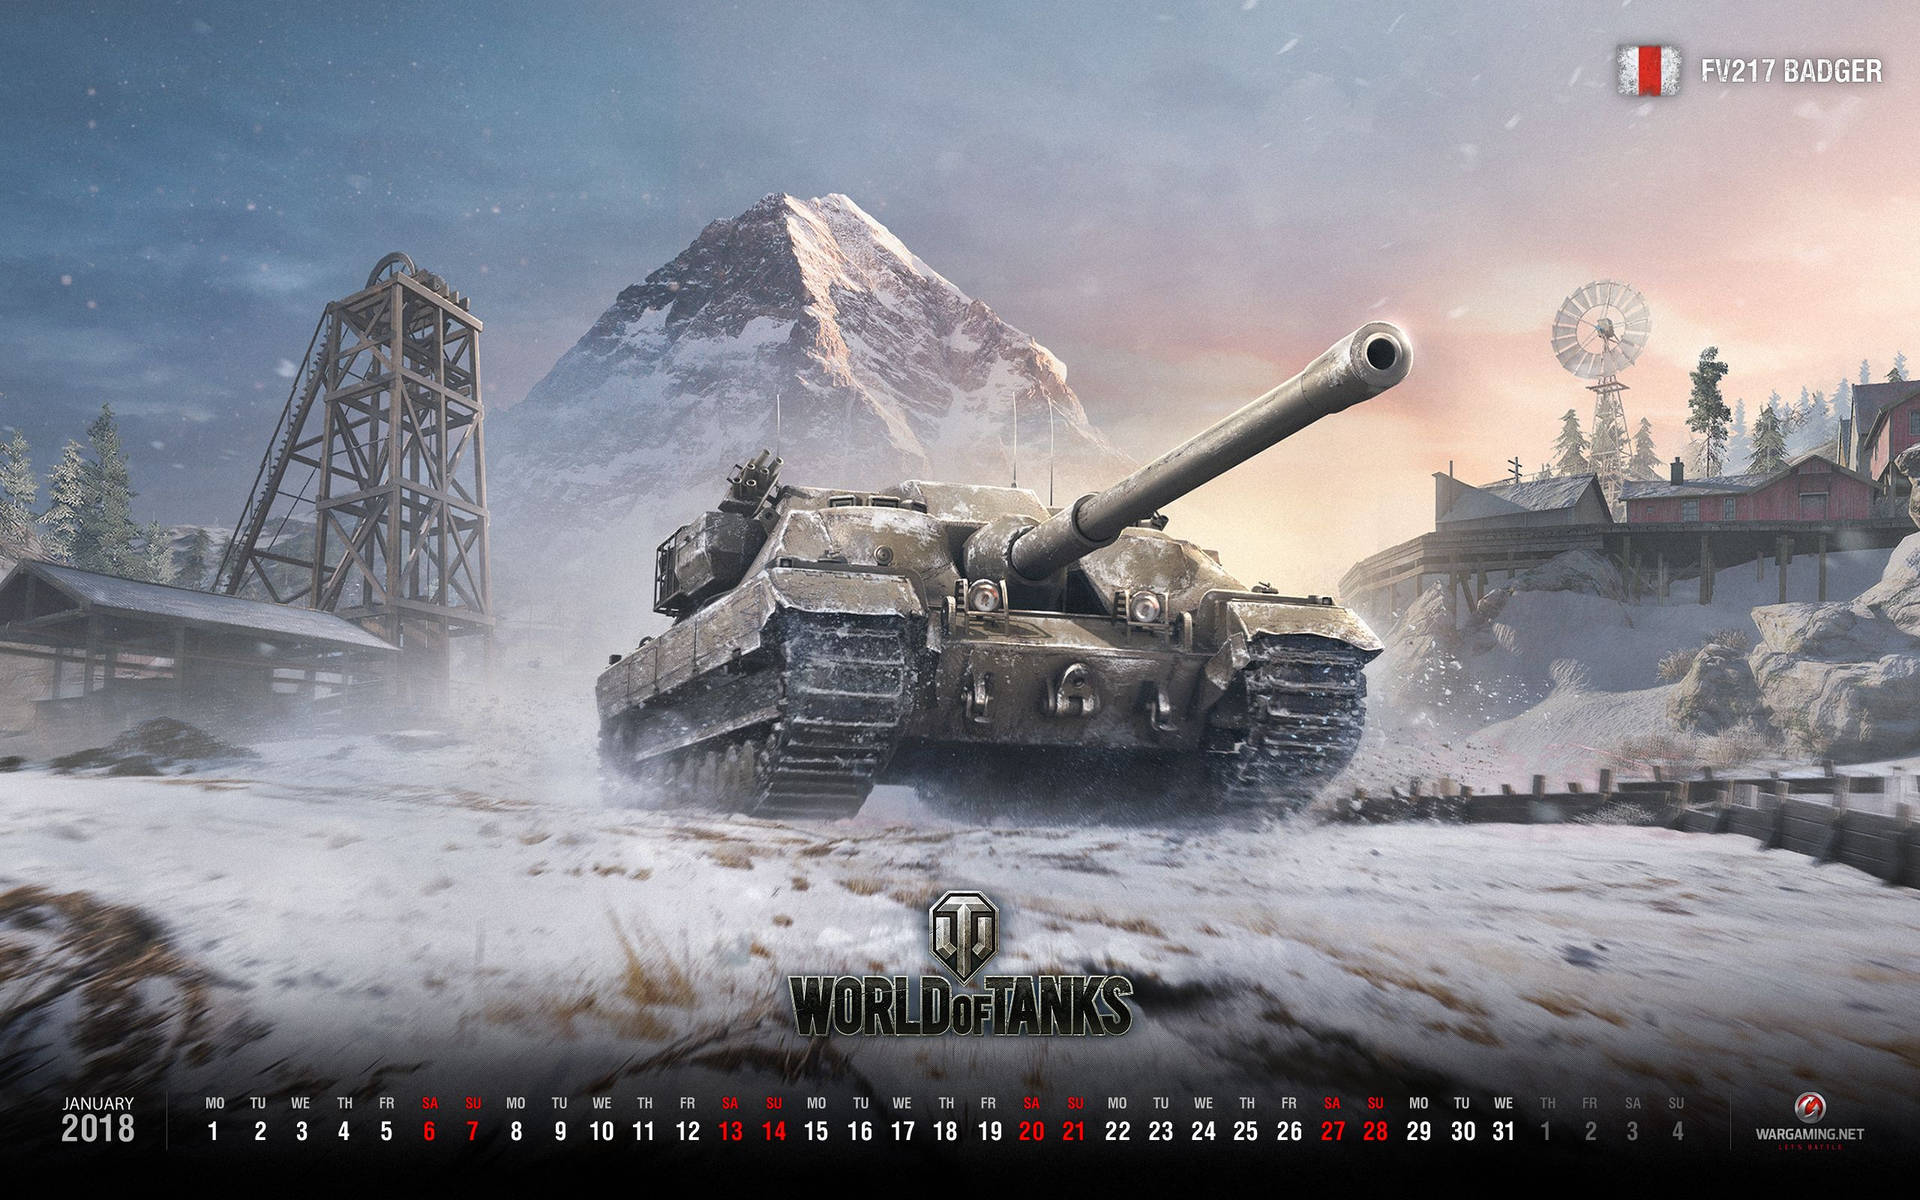 World Of Tanks Fv217 Badger Wallpaper